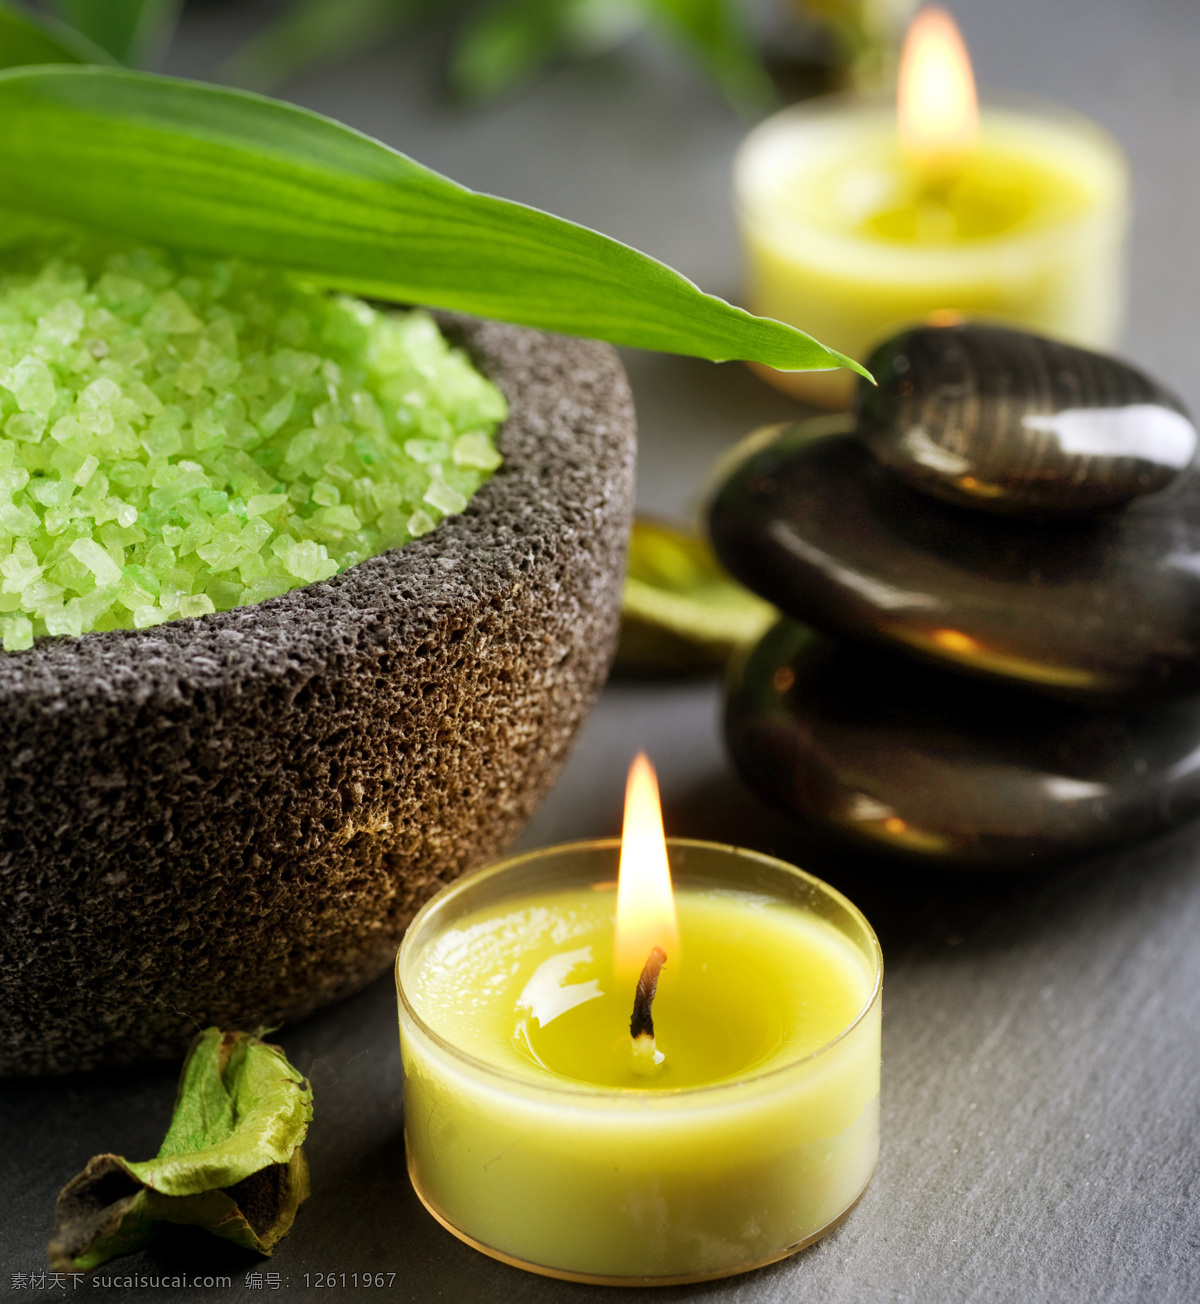 绿色 浴盐 蜡烛 spa 身体理疗 能量石 绿叶 其他类别 生活百科 黑色